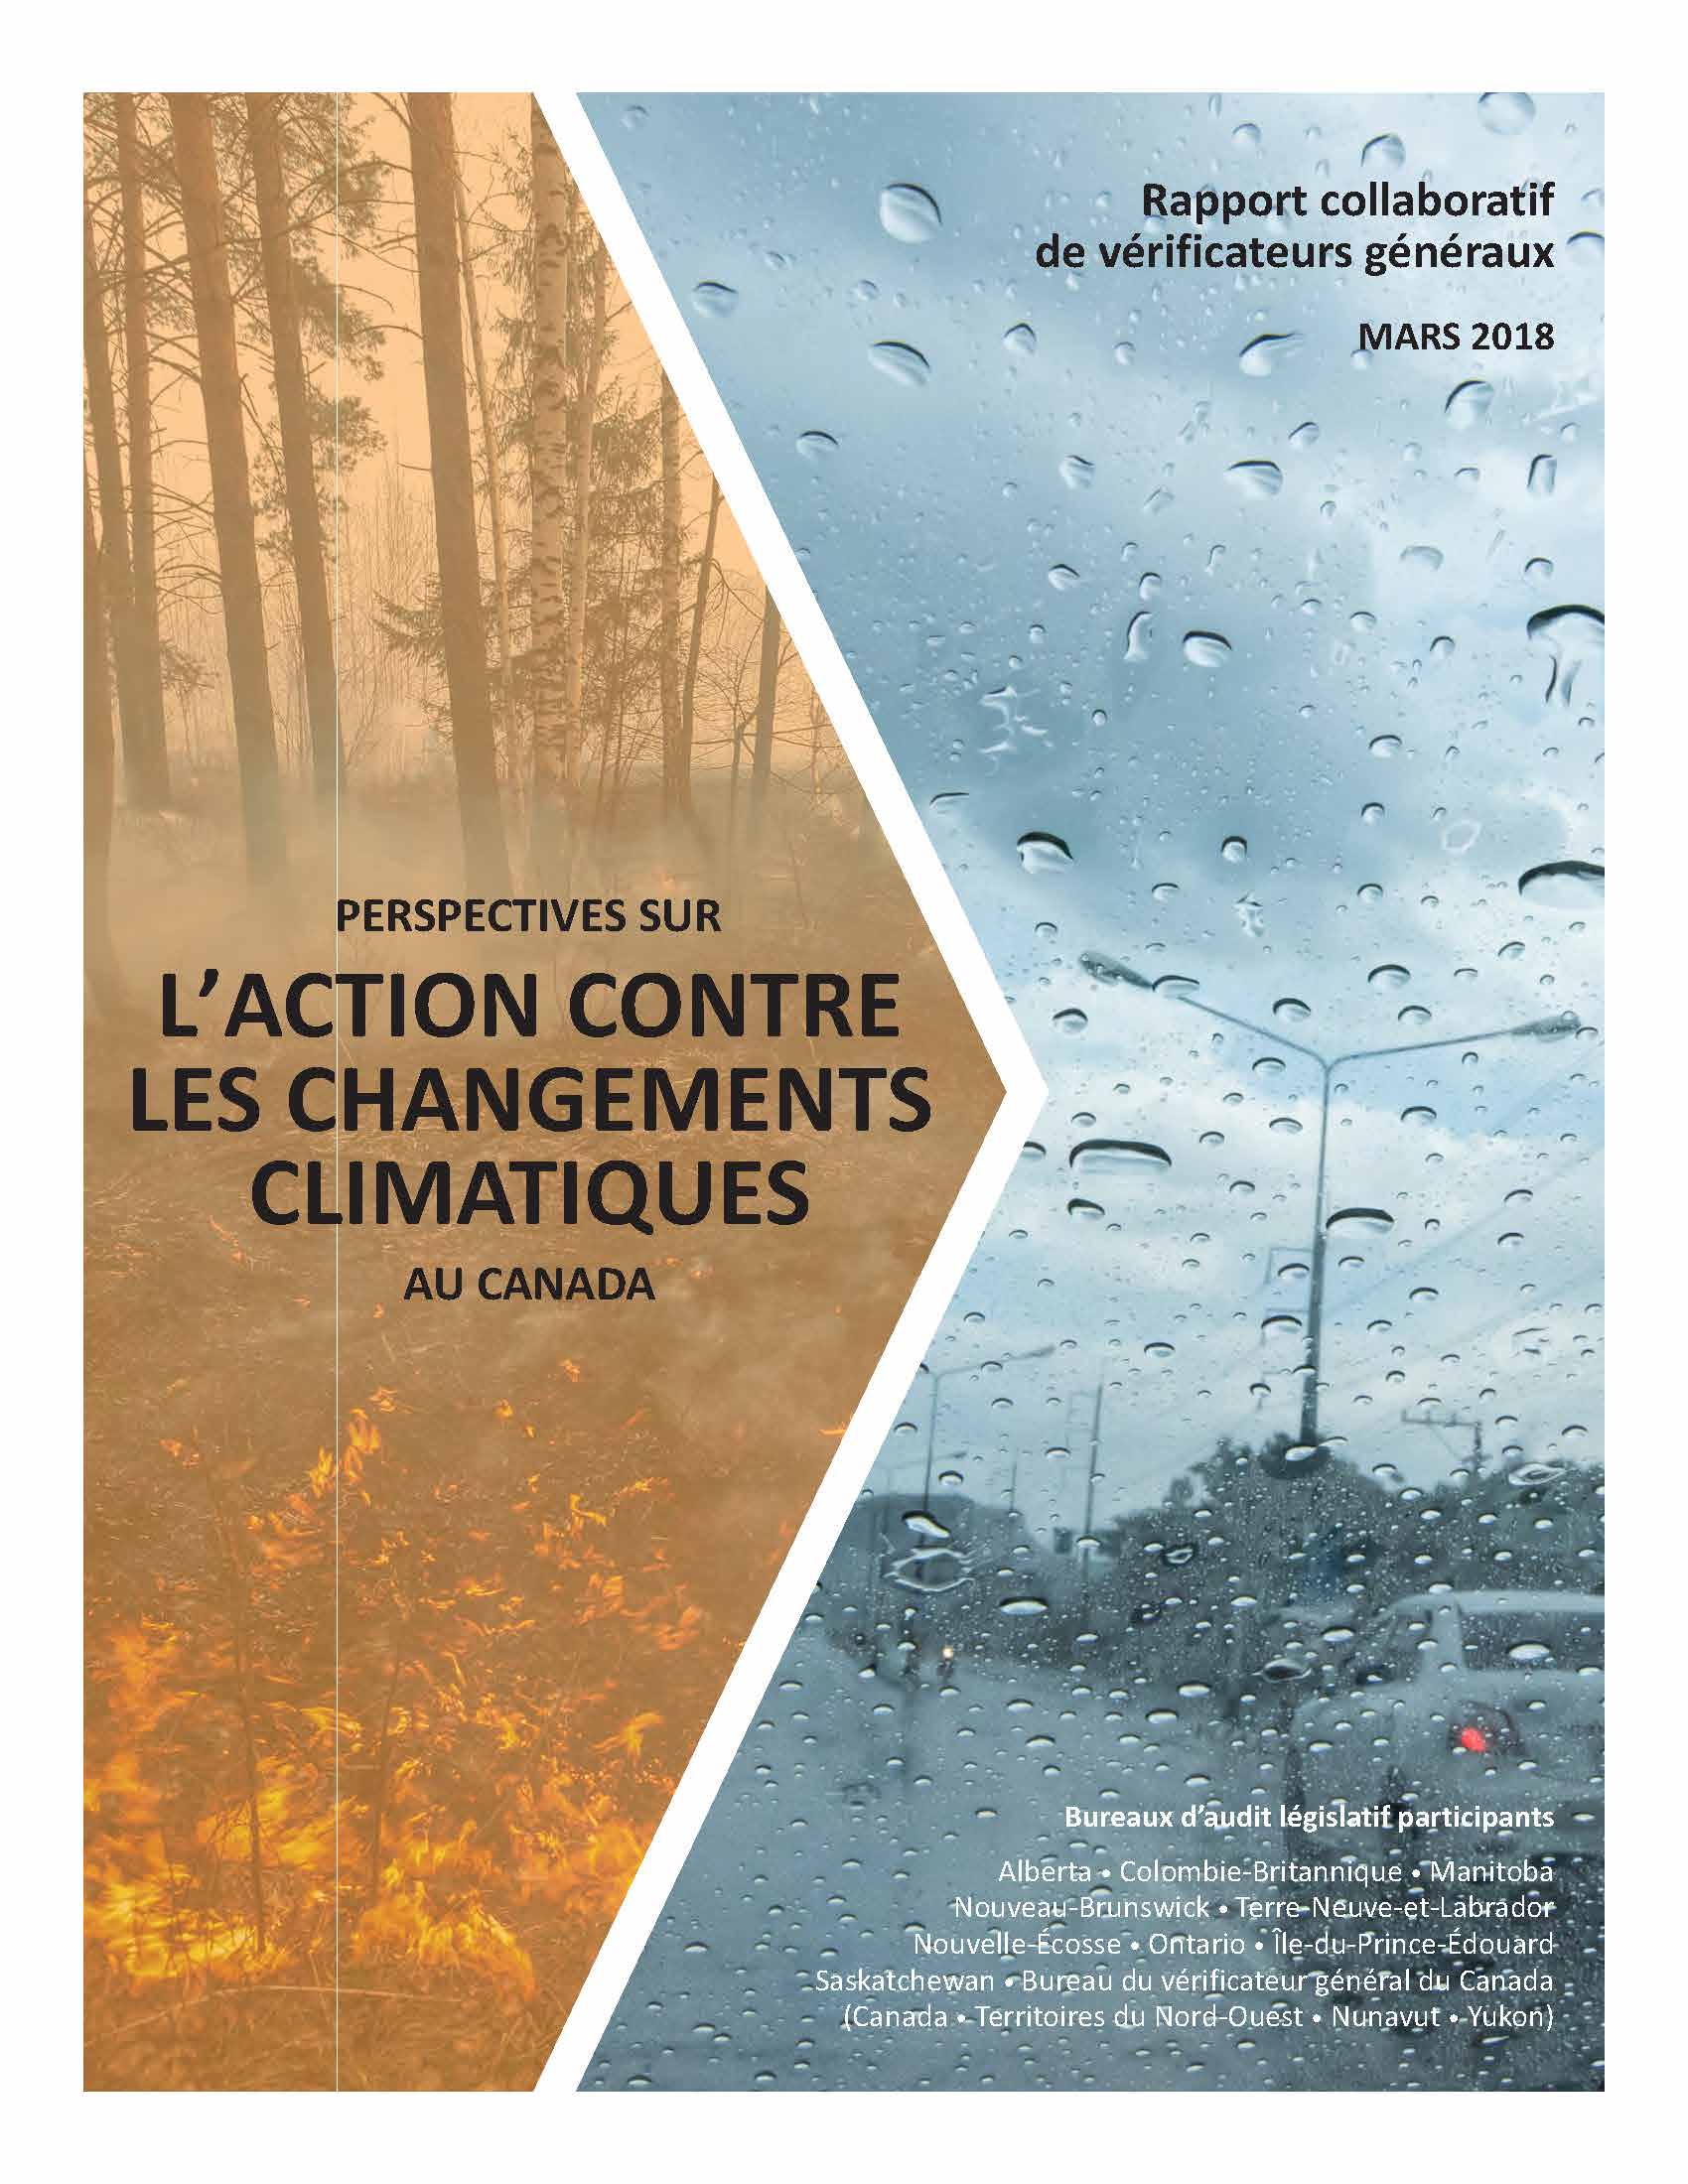 Perspectives sur l’action contre les changements climatiques au Canada : Rapport collaboratif de vérificateurs généraux